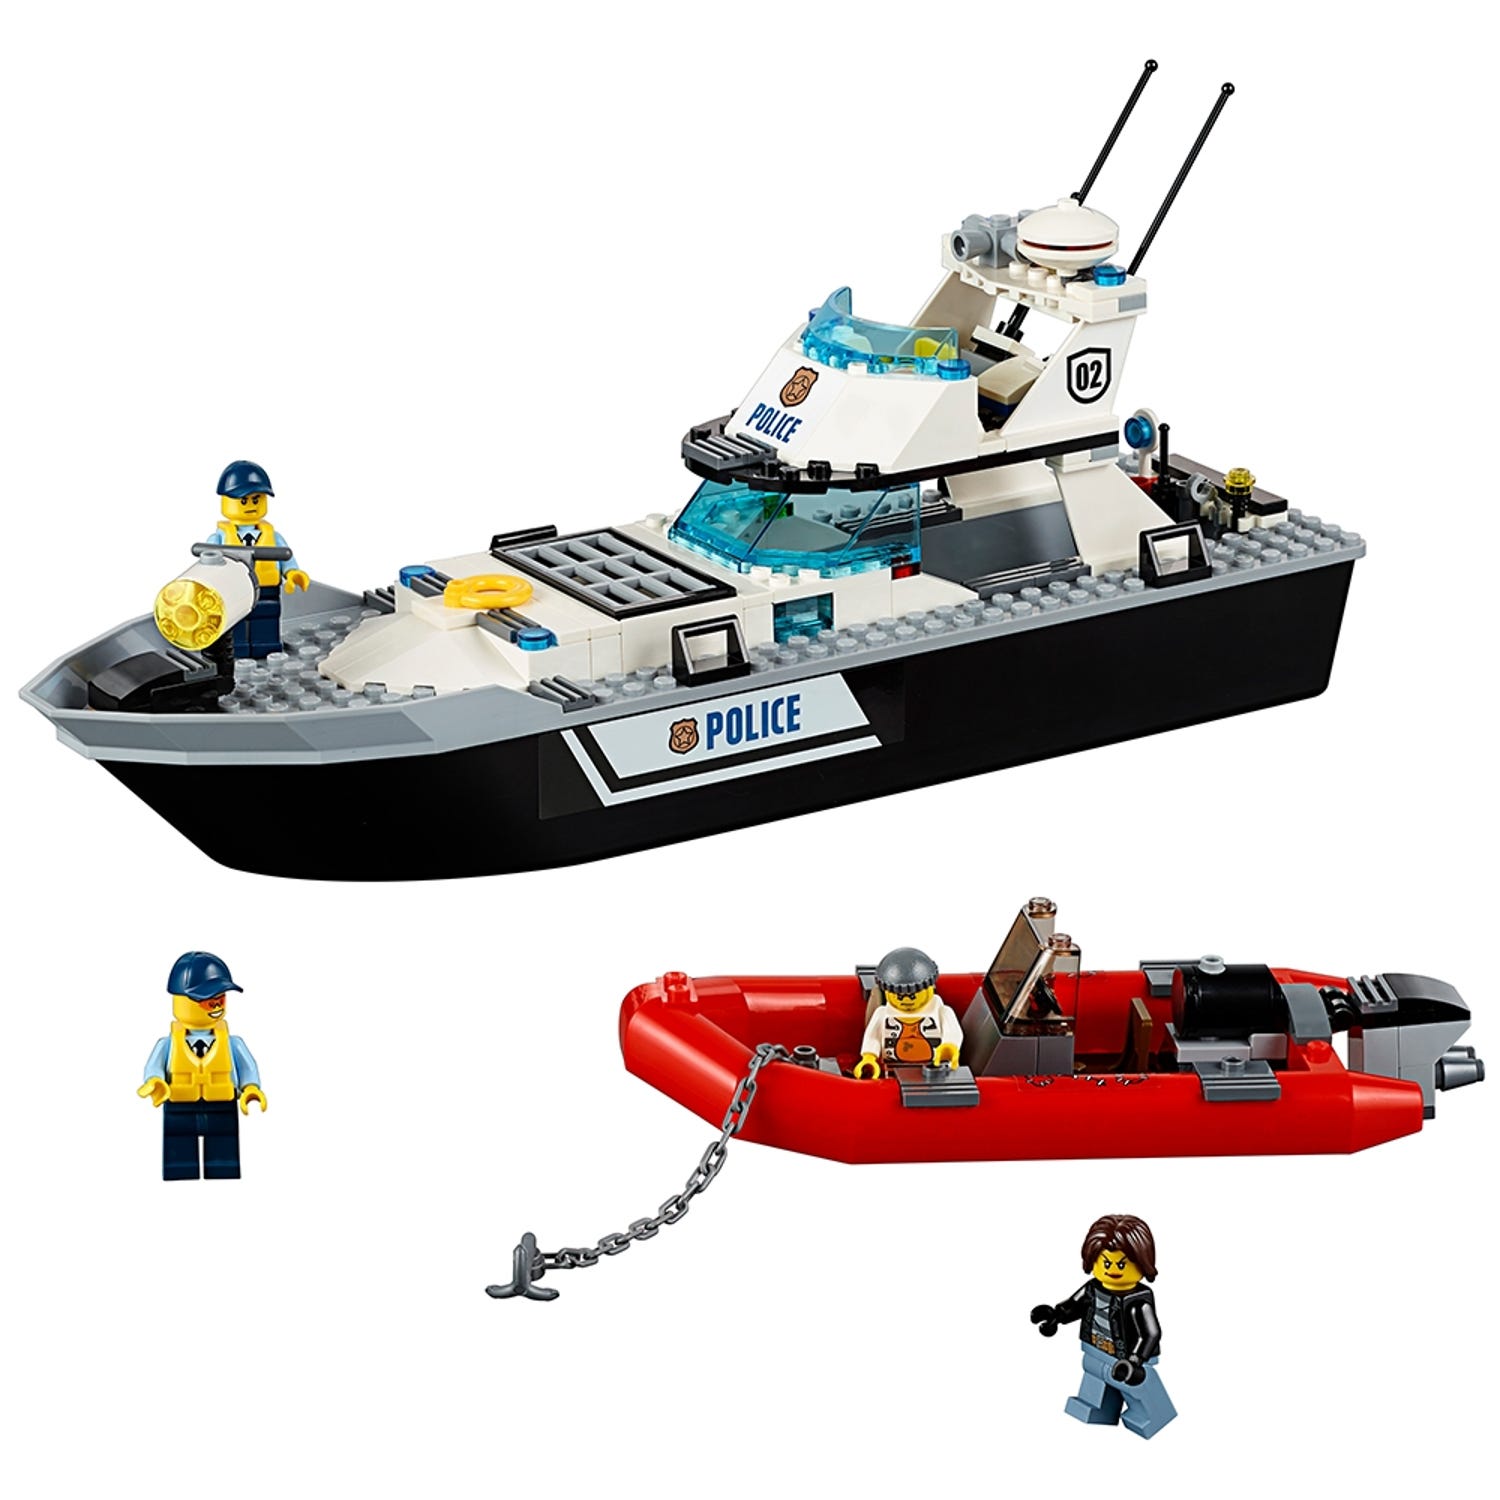 sejle reform vejspærring Police Patrol Boat 60129 | City | Buy online at the Official LEGO® Shop US